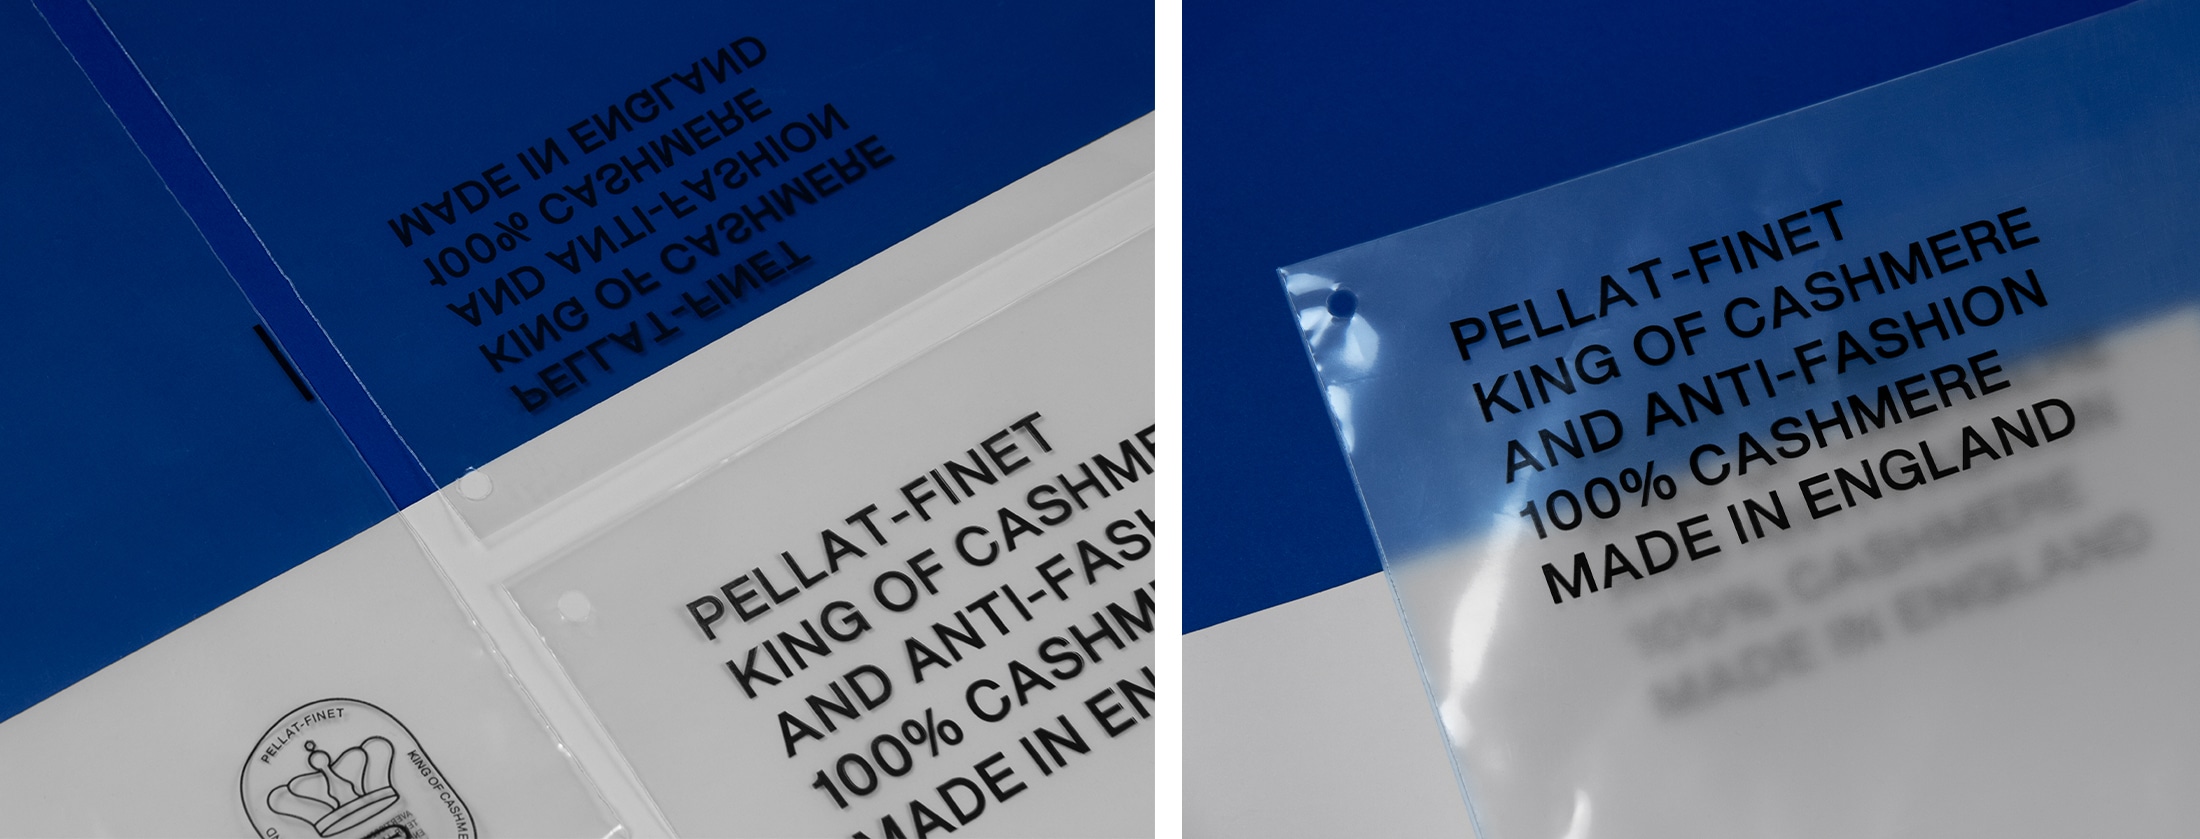 Polybag plastique bio-sourcé transparent Pellat-finet avec zipette, texte et logo noir.